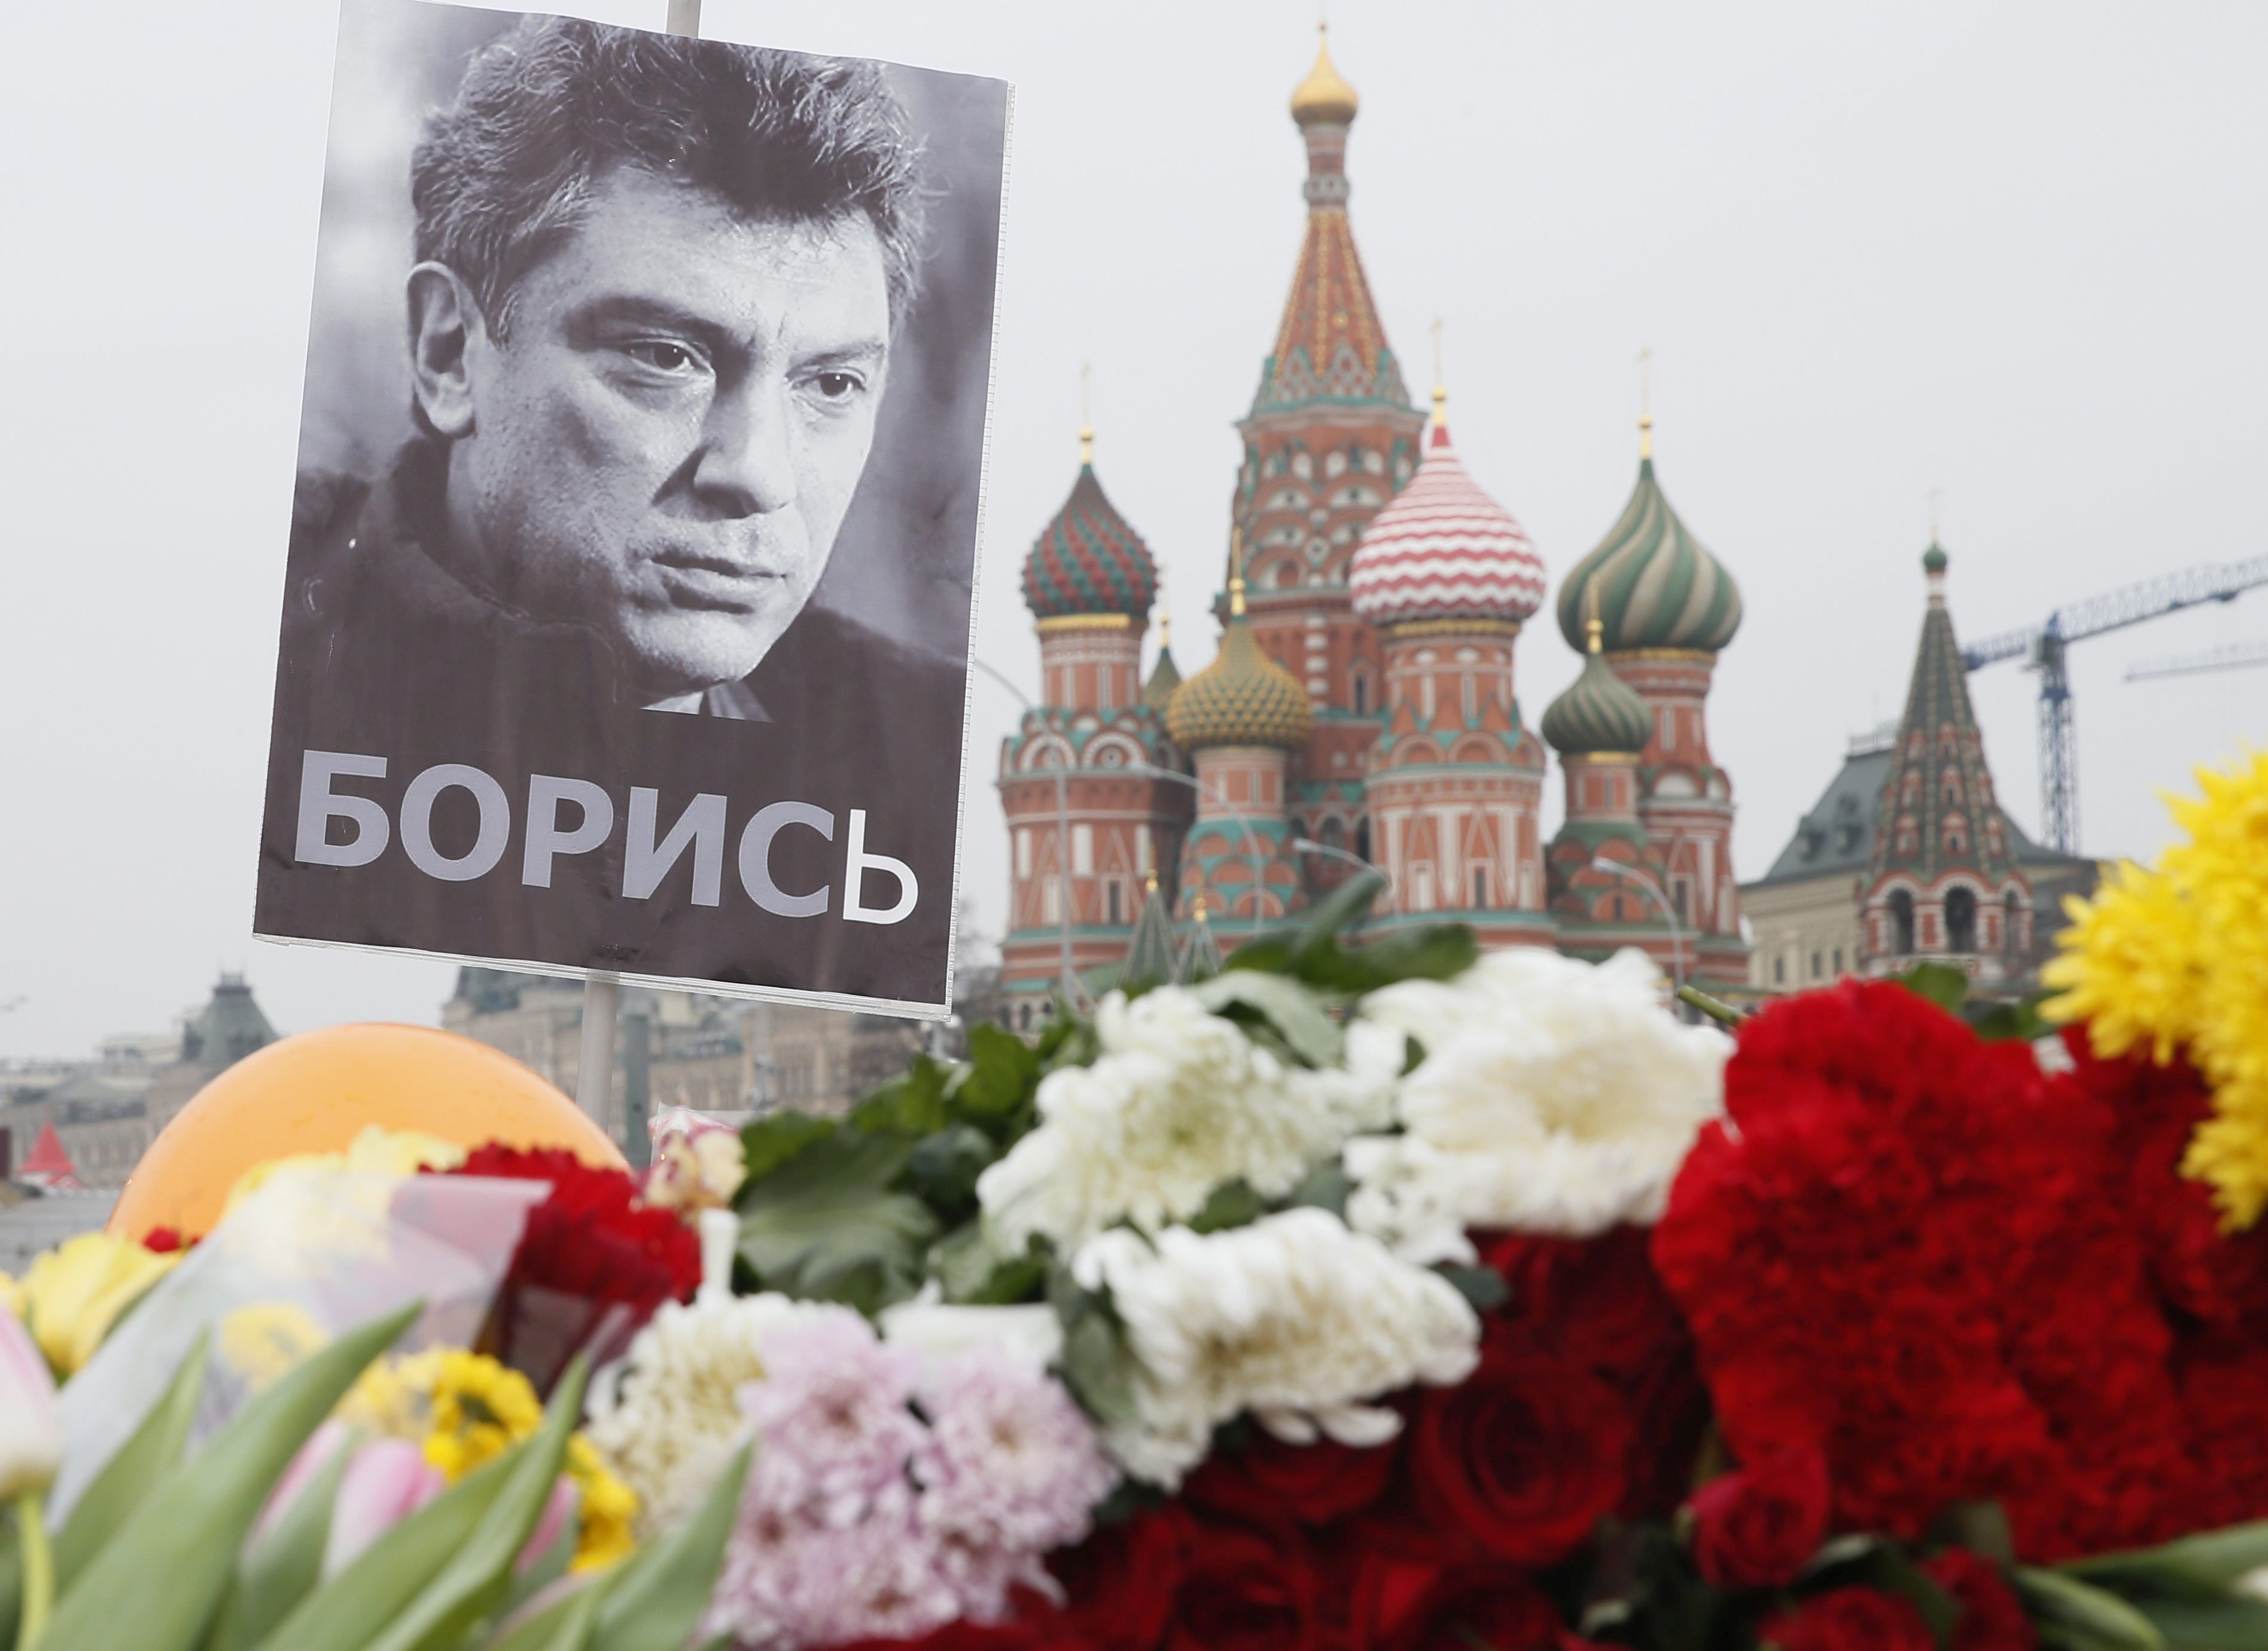 Ομολόγησε ο ένας ύποπτος για τη δολοφονία Νεμτσόφ